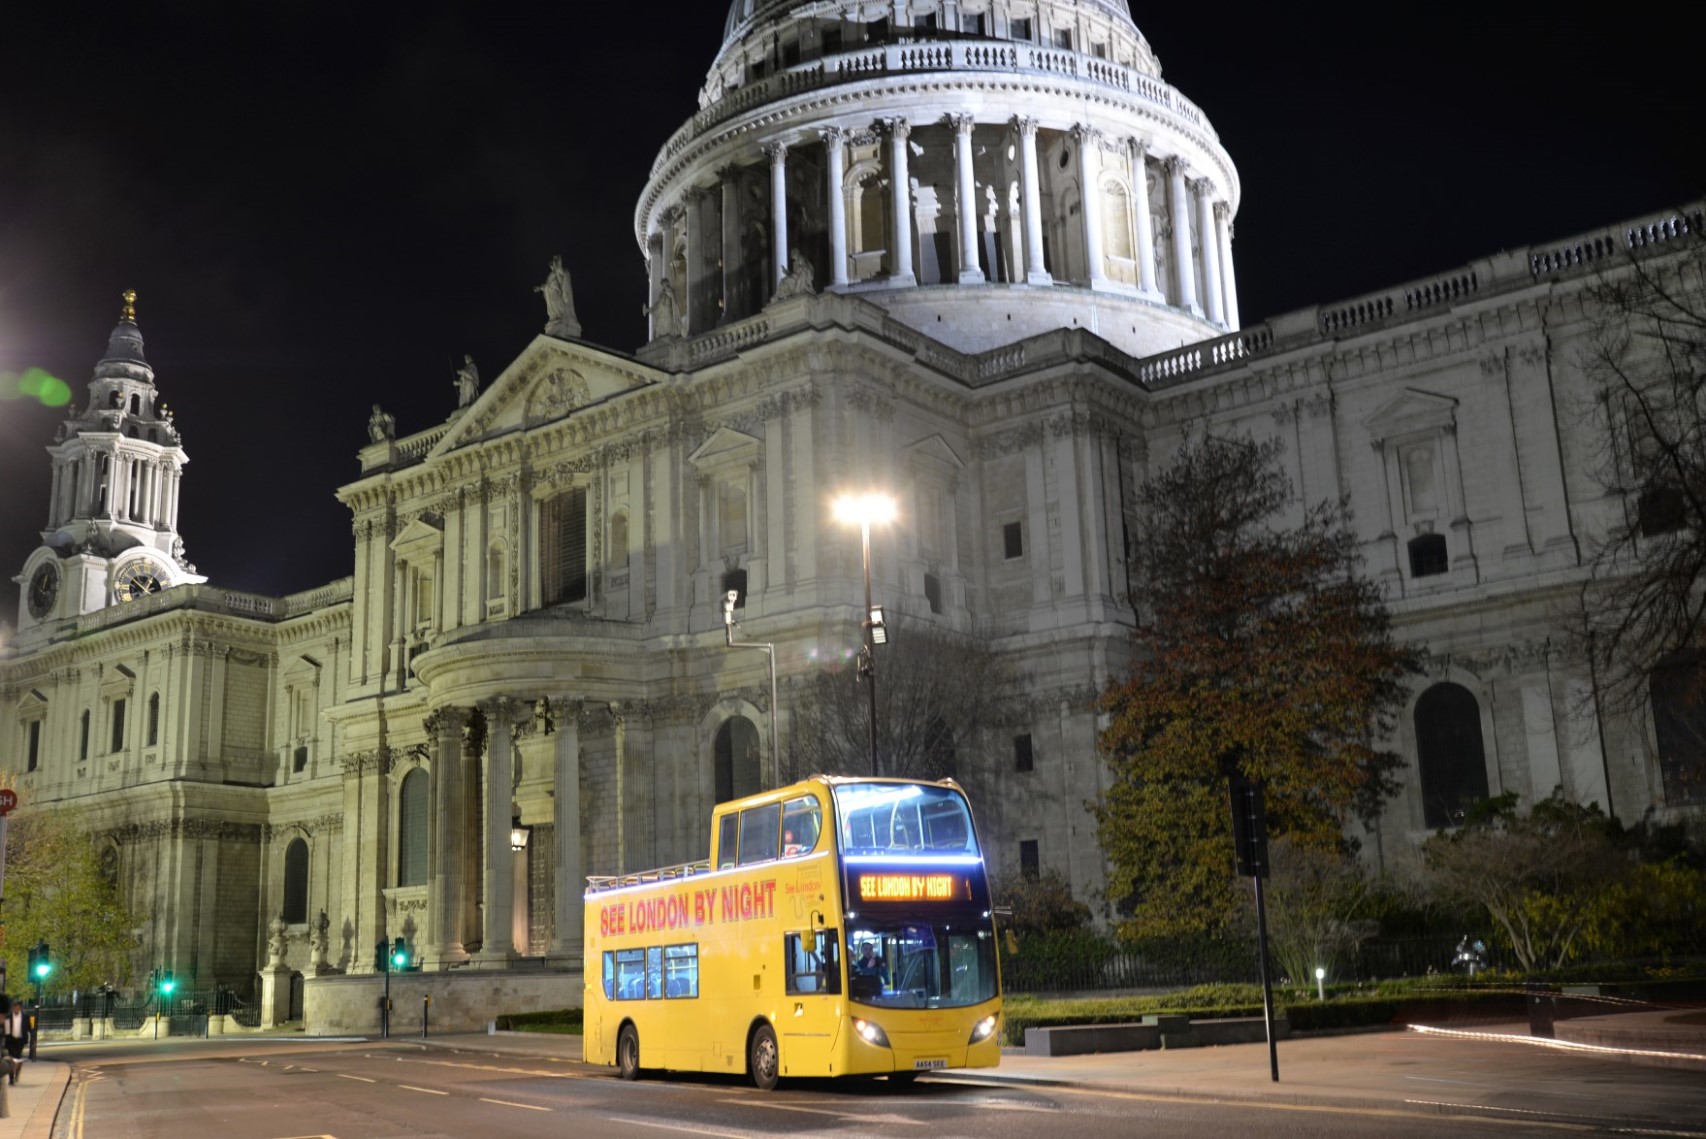 night bus tour in london